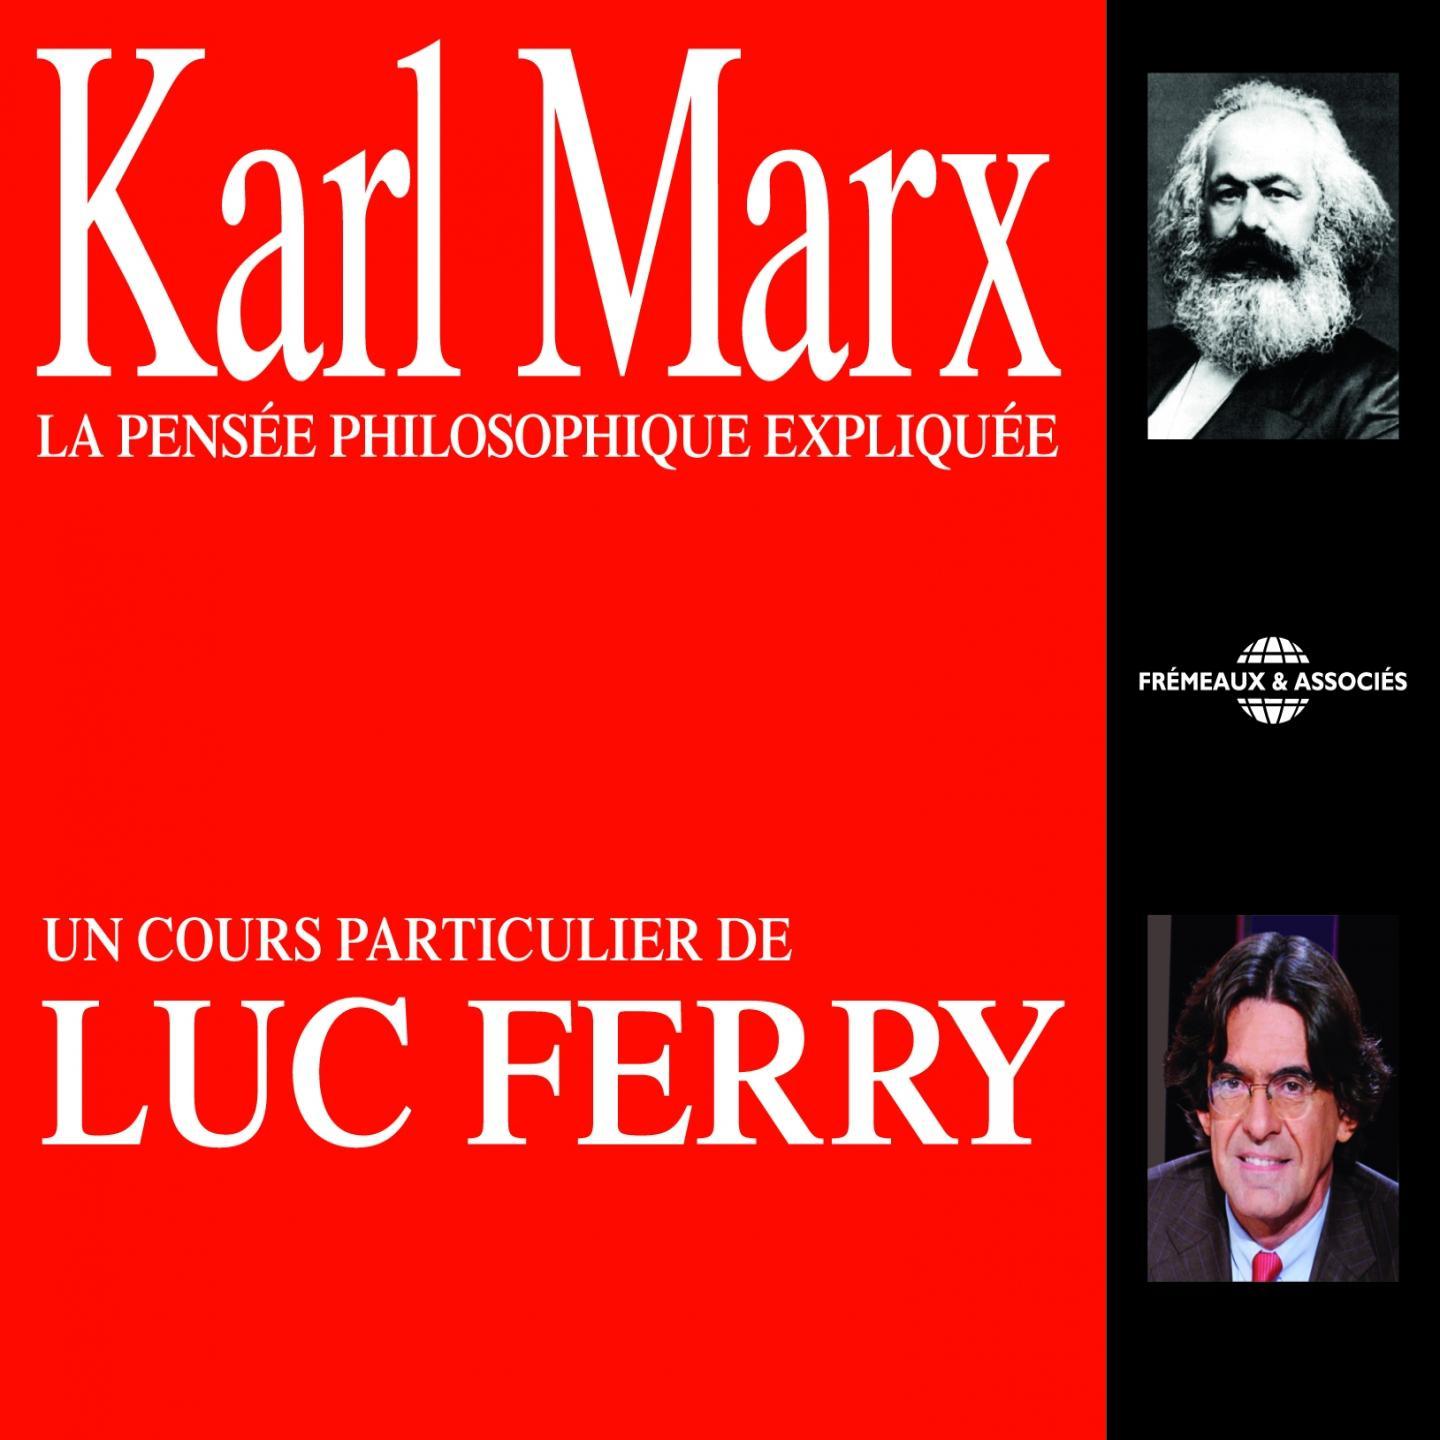 Karl Marx : La pense e philosophique explique e Un cours particulier de Luc Ferry